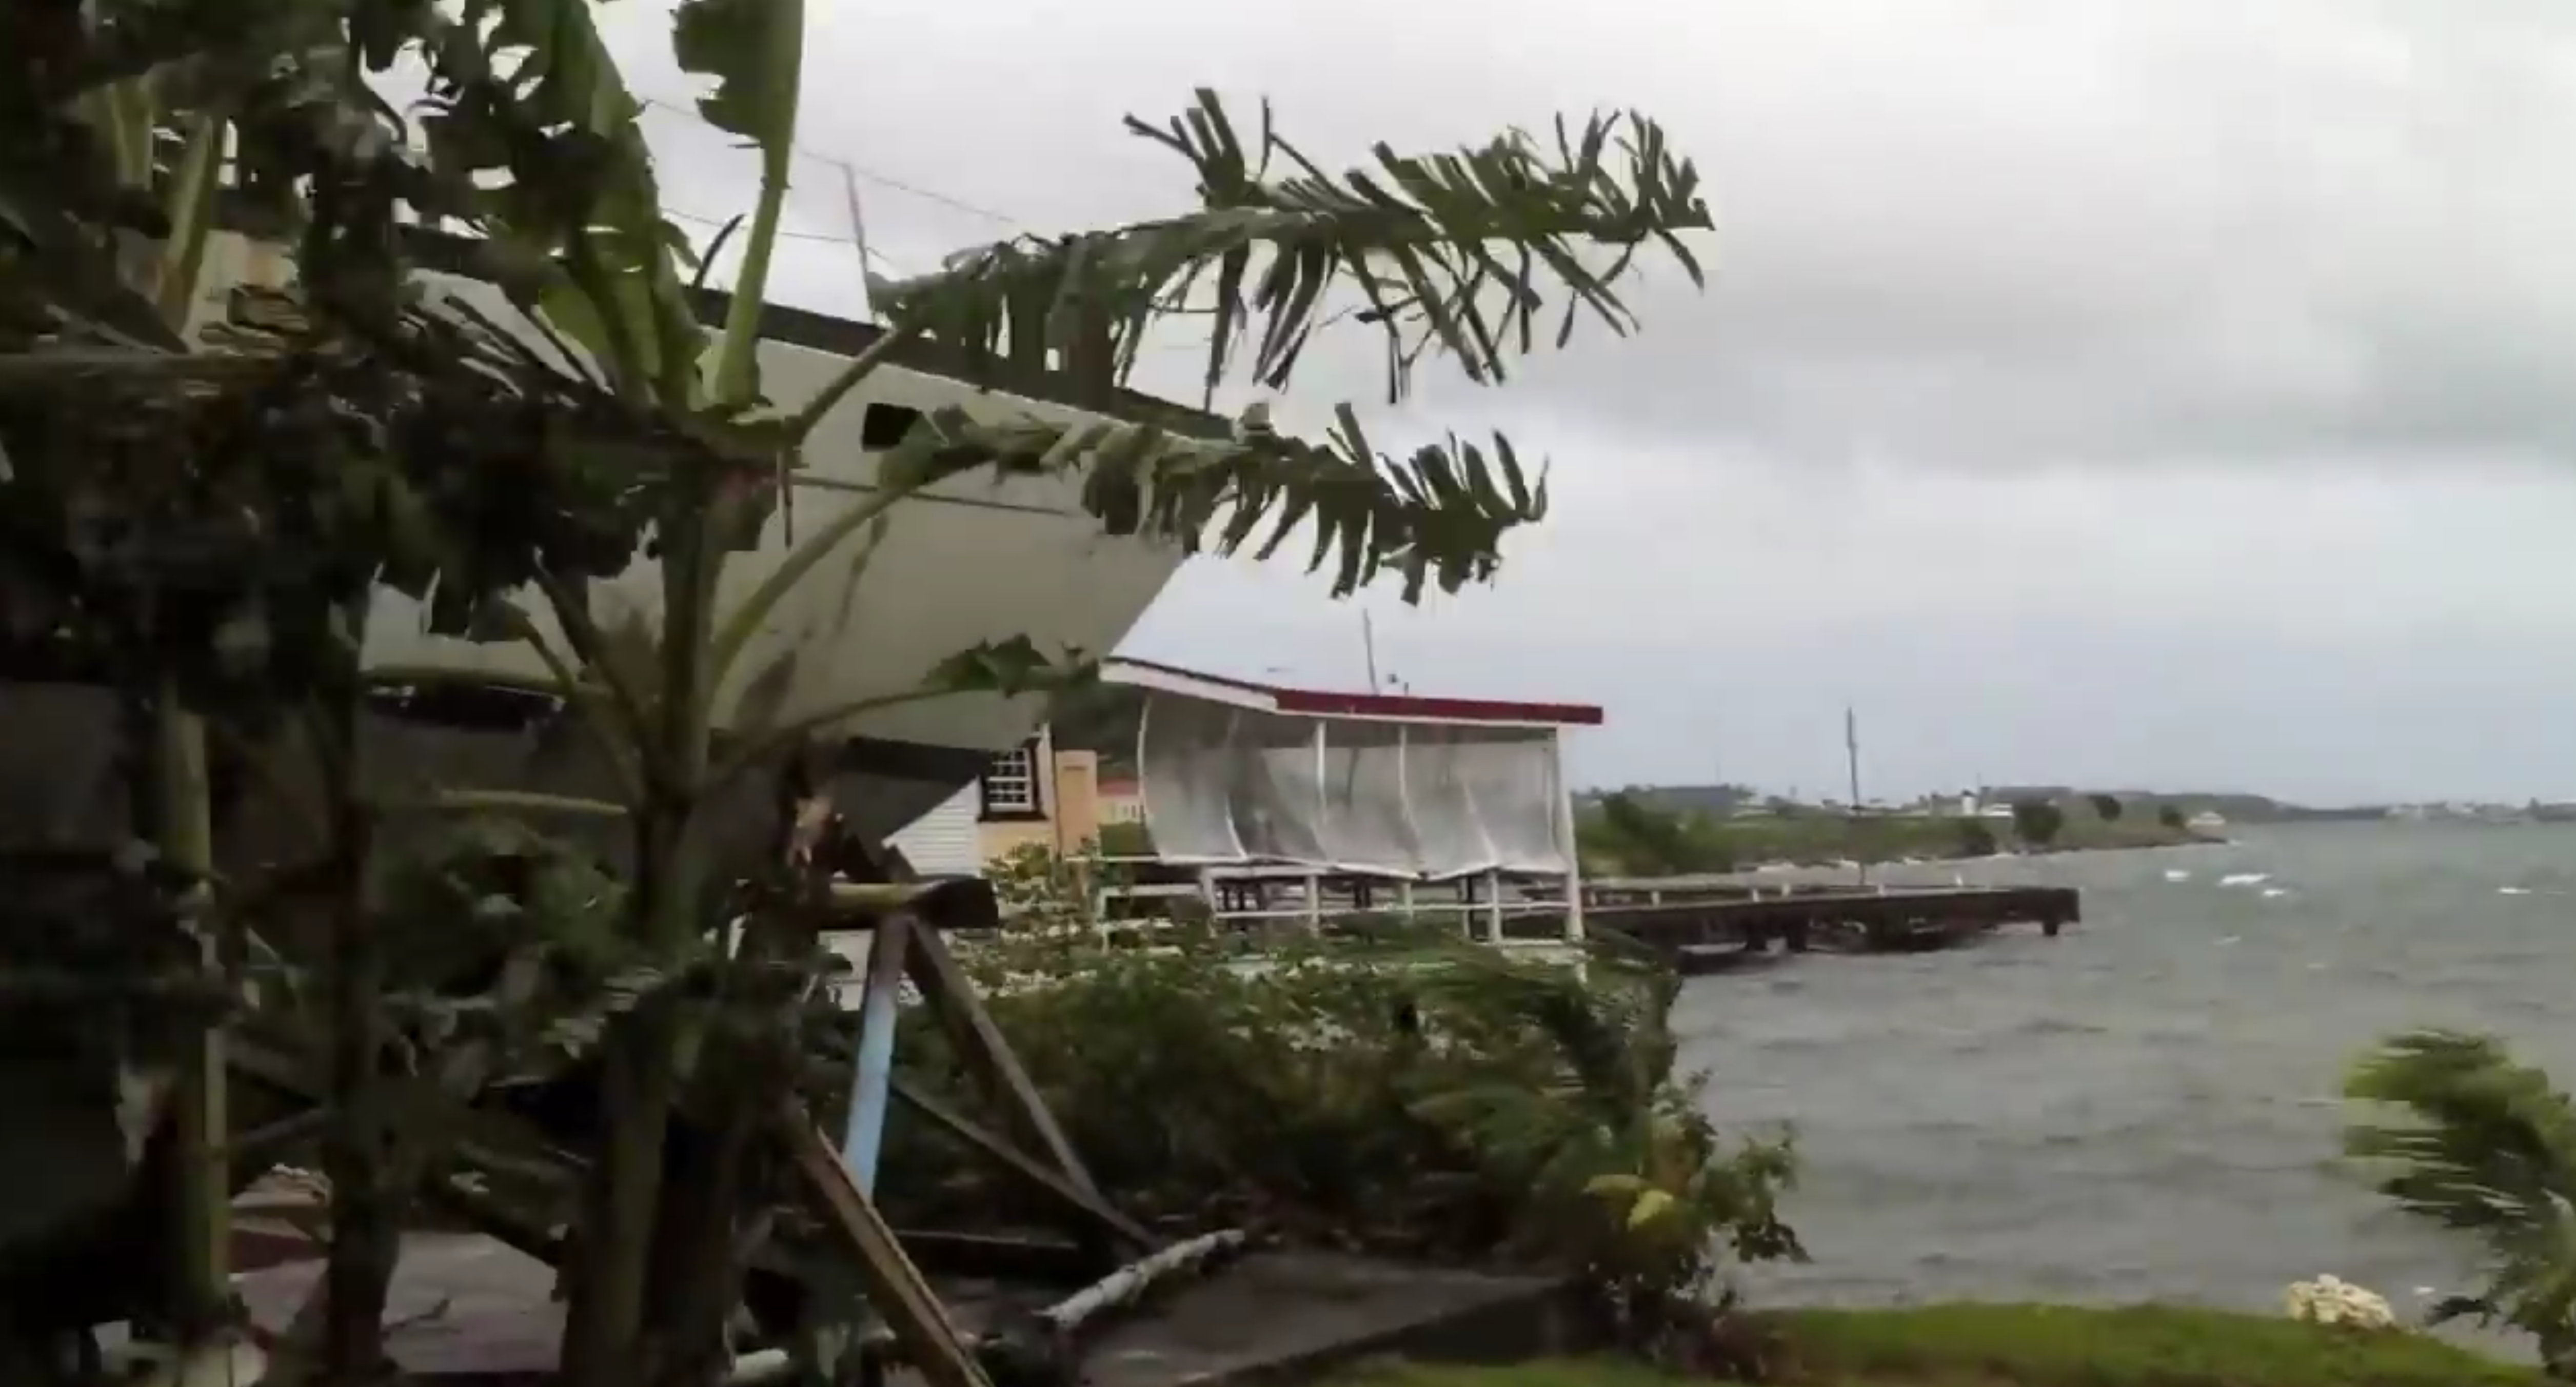 Surviving The Beginnings of Hurricane Irene in St. Maarten